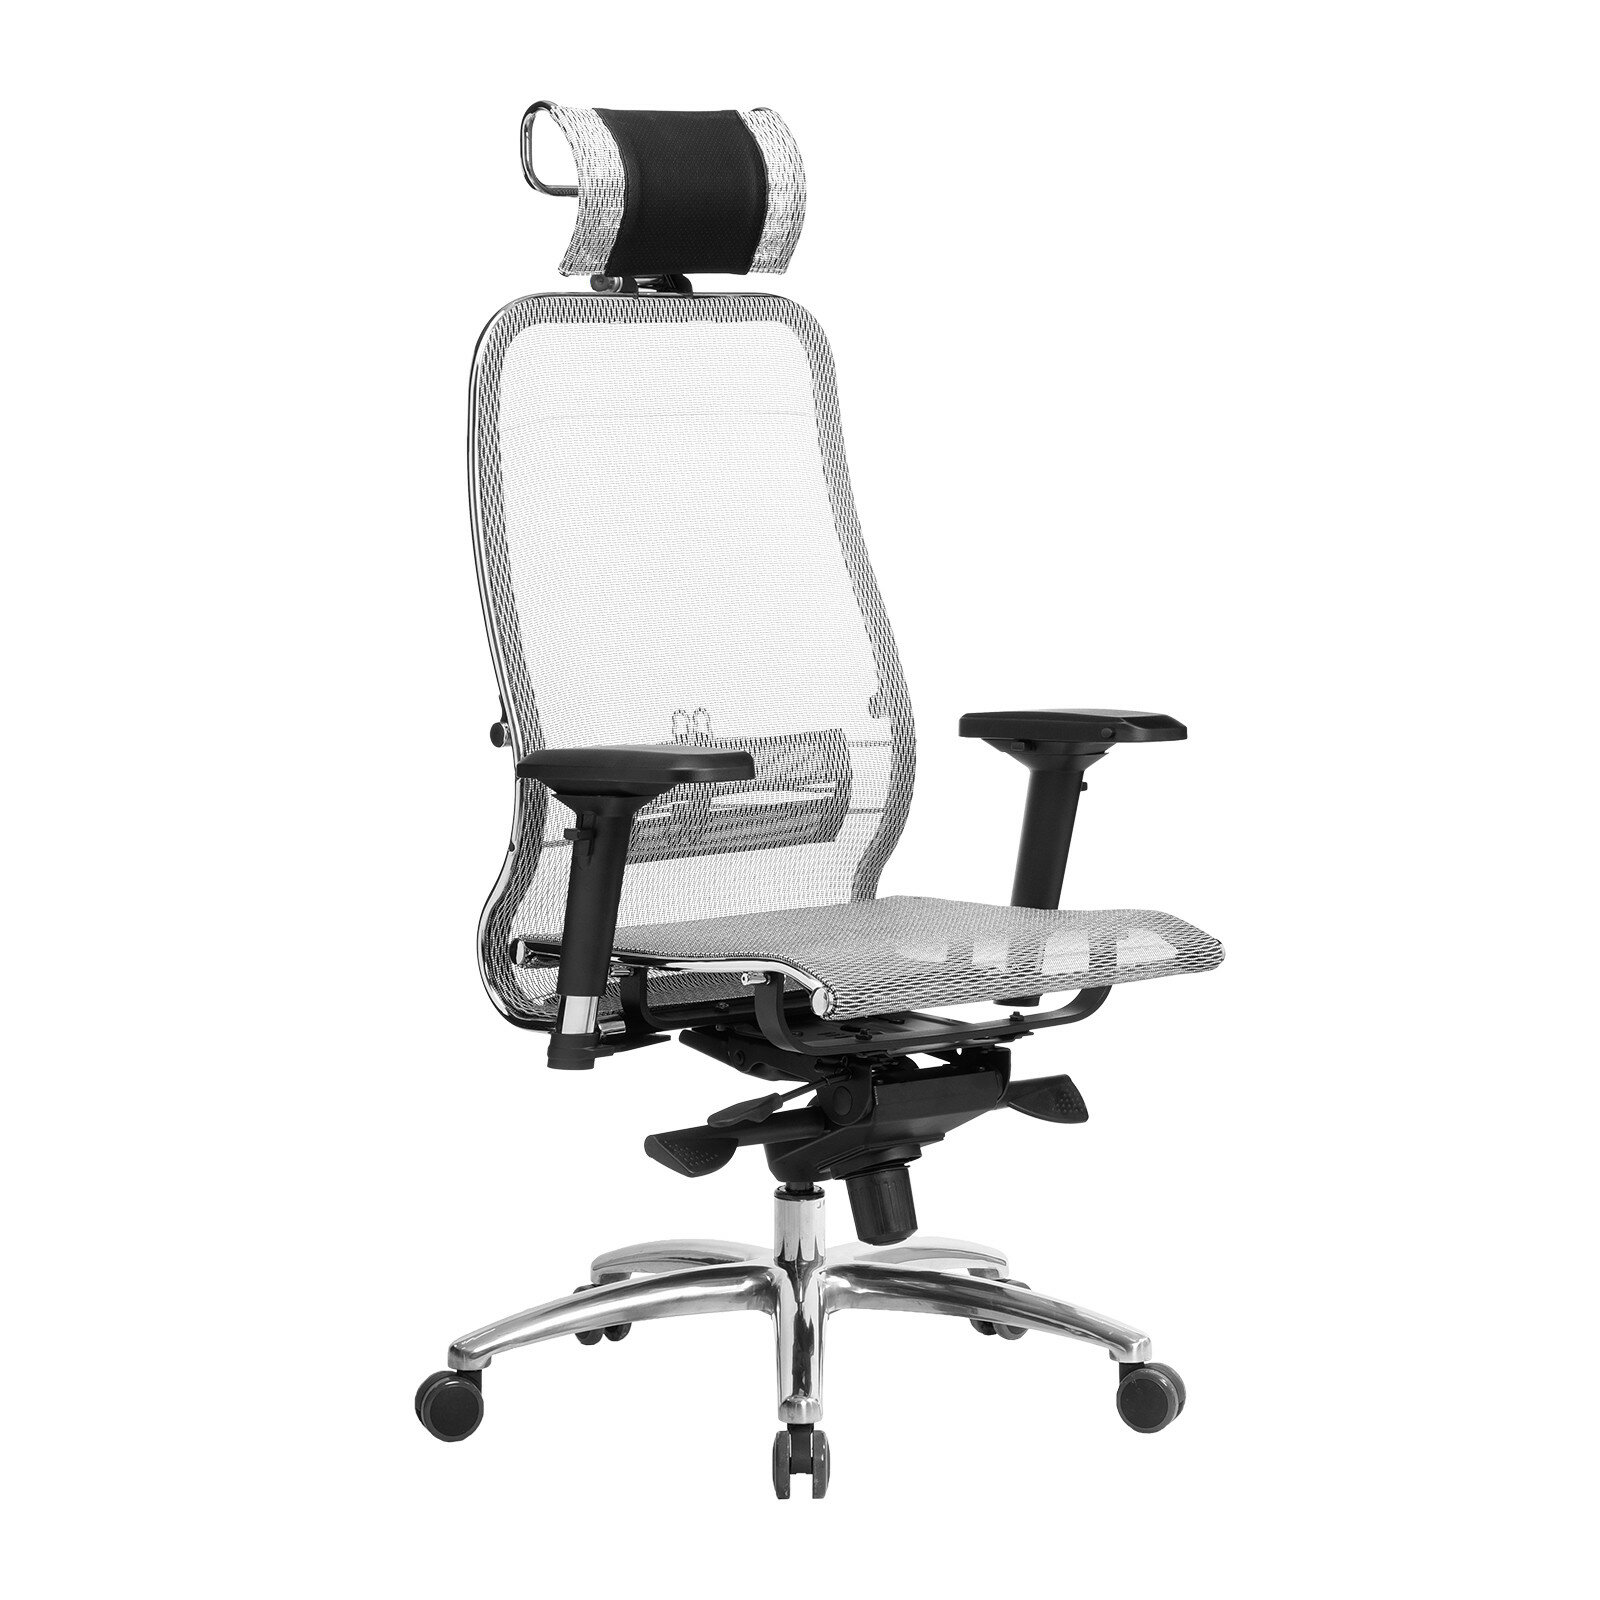 Компьютерное кресло METTA Samurai S-3.04 офисное, обивка: сетка/текстиль, цвет: серый